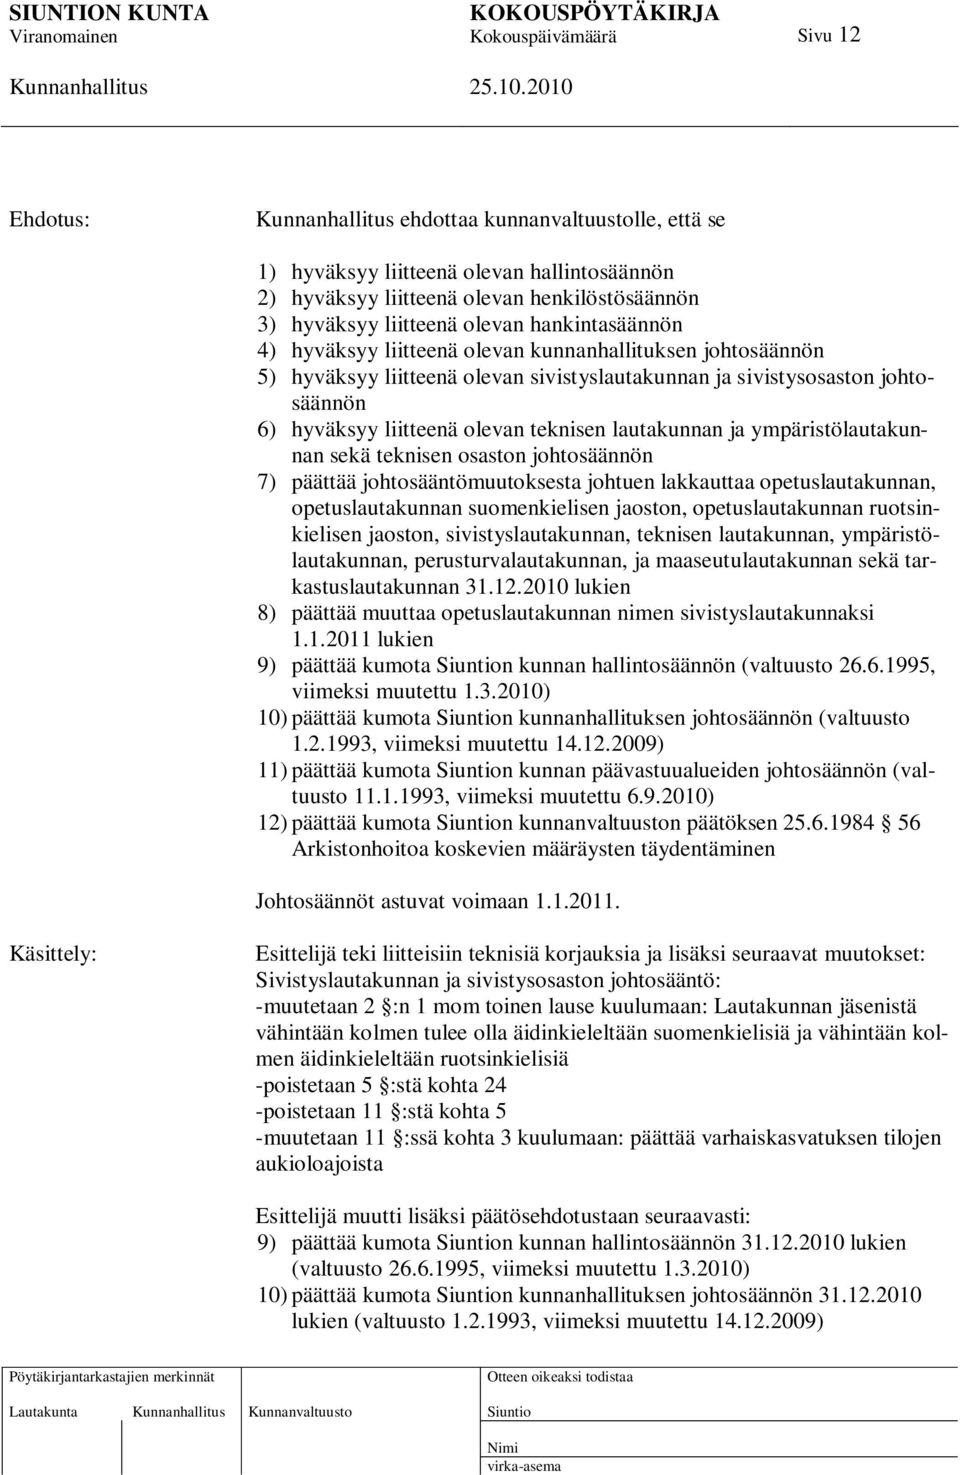 ympäristölautakunnan sekä teknisen osaston johtosäännön 7) päättää johtosääntömuutoksesta johtuen lakkauttaa opetuslautakunnan, opetuslautakunnan suomenkielisen jaoston, opetuslautakunnan